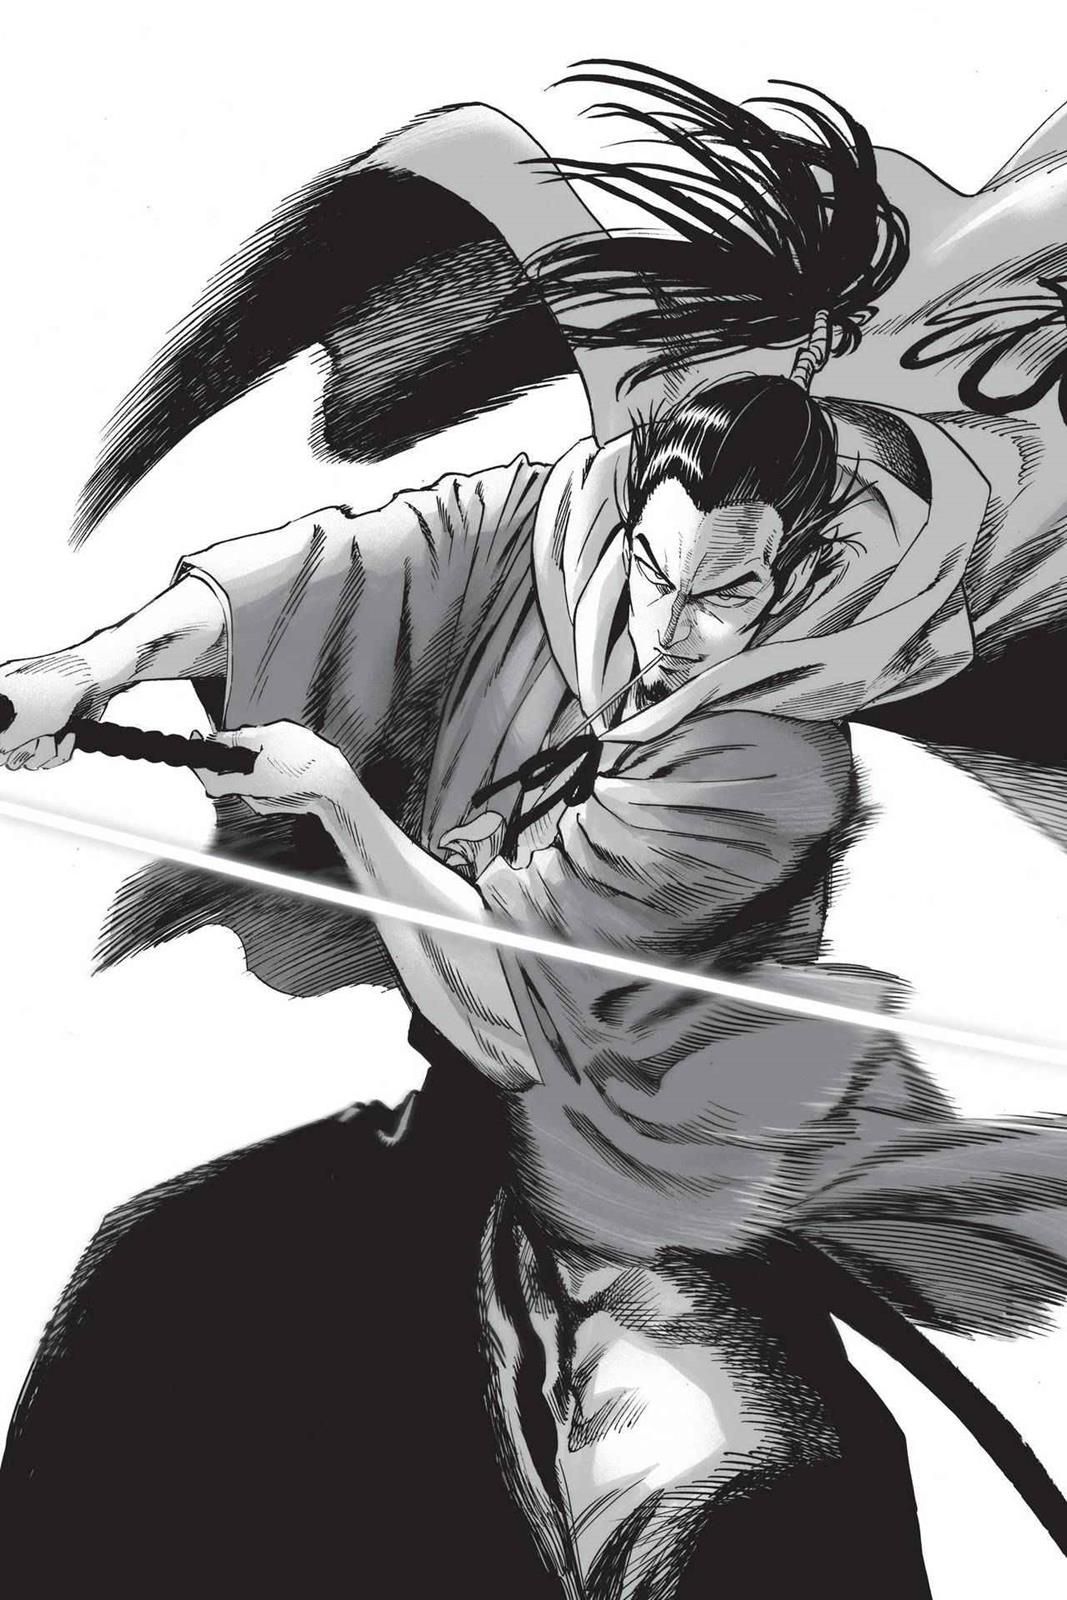 Atomic Samurai Volume 13. One punch man anime, One punch man